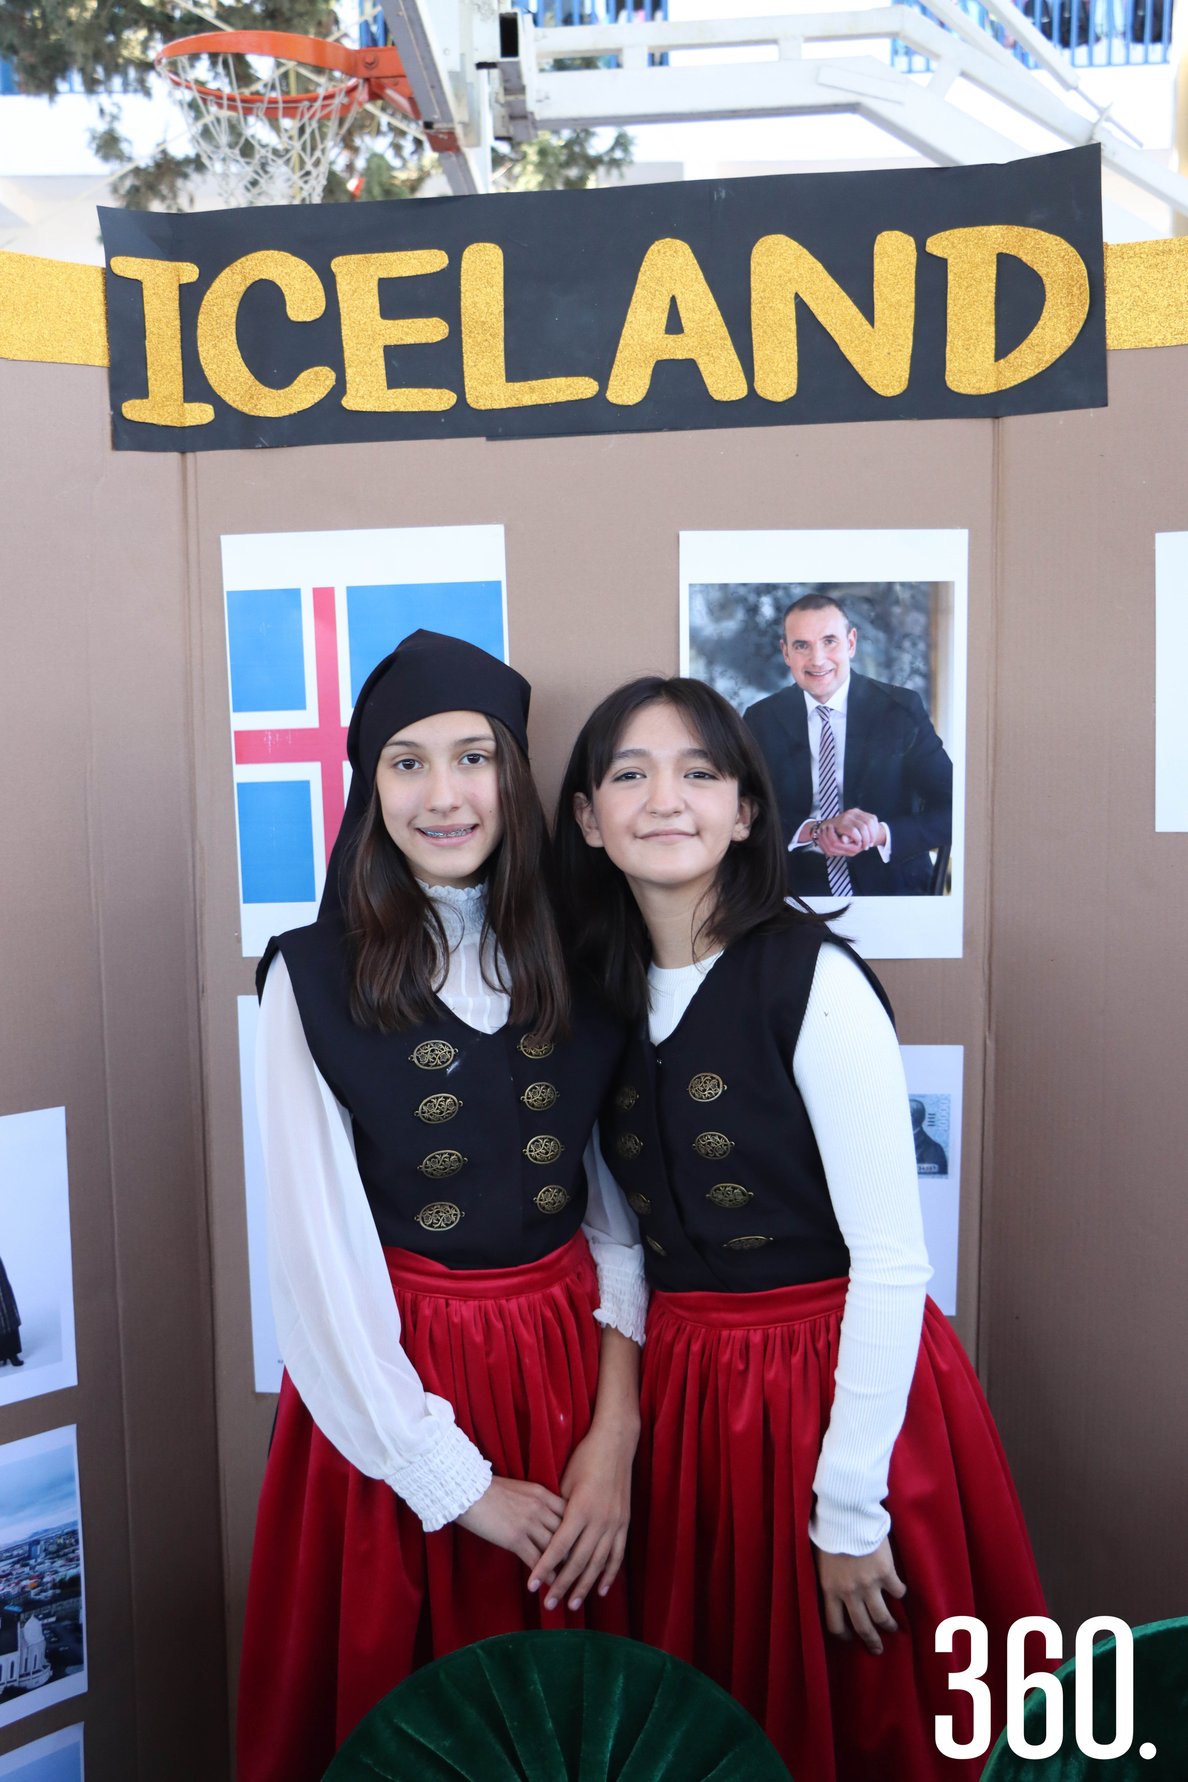 Carolina Álvarez y Vanessa Carranza representando Islandia.